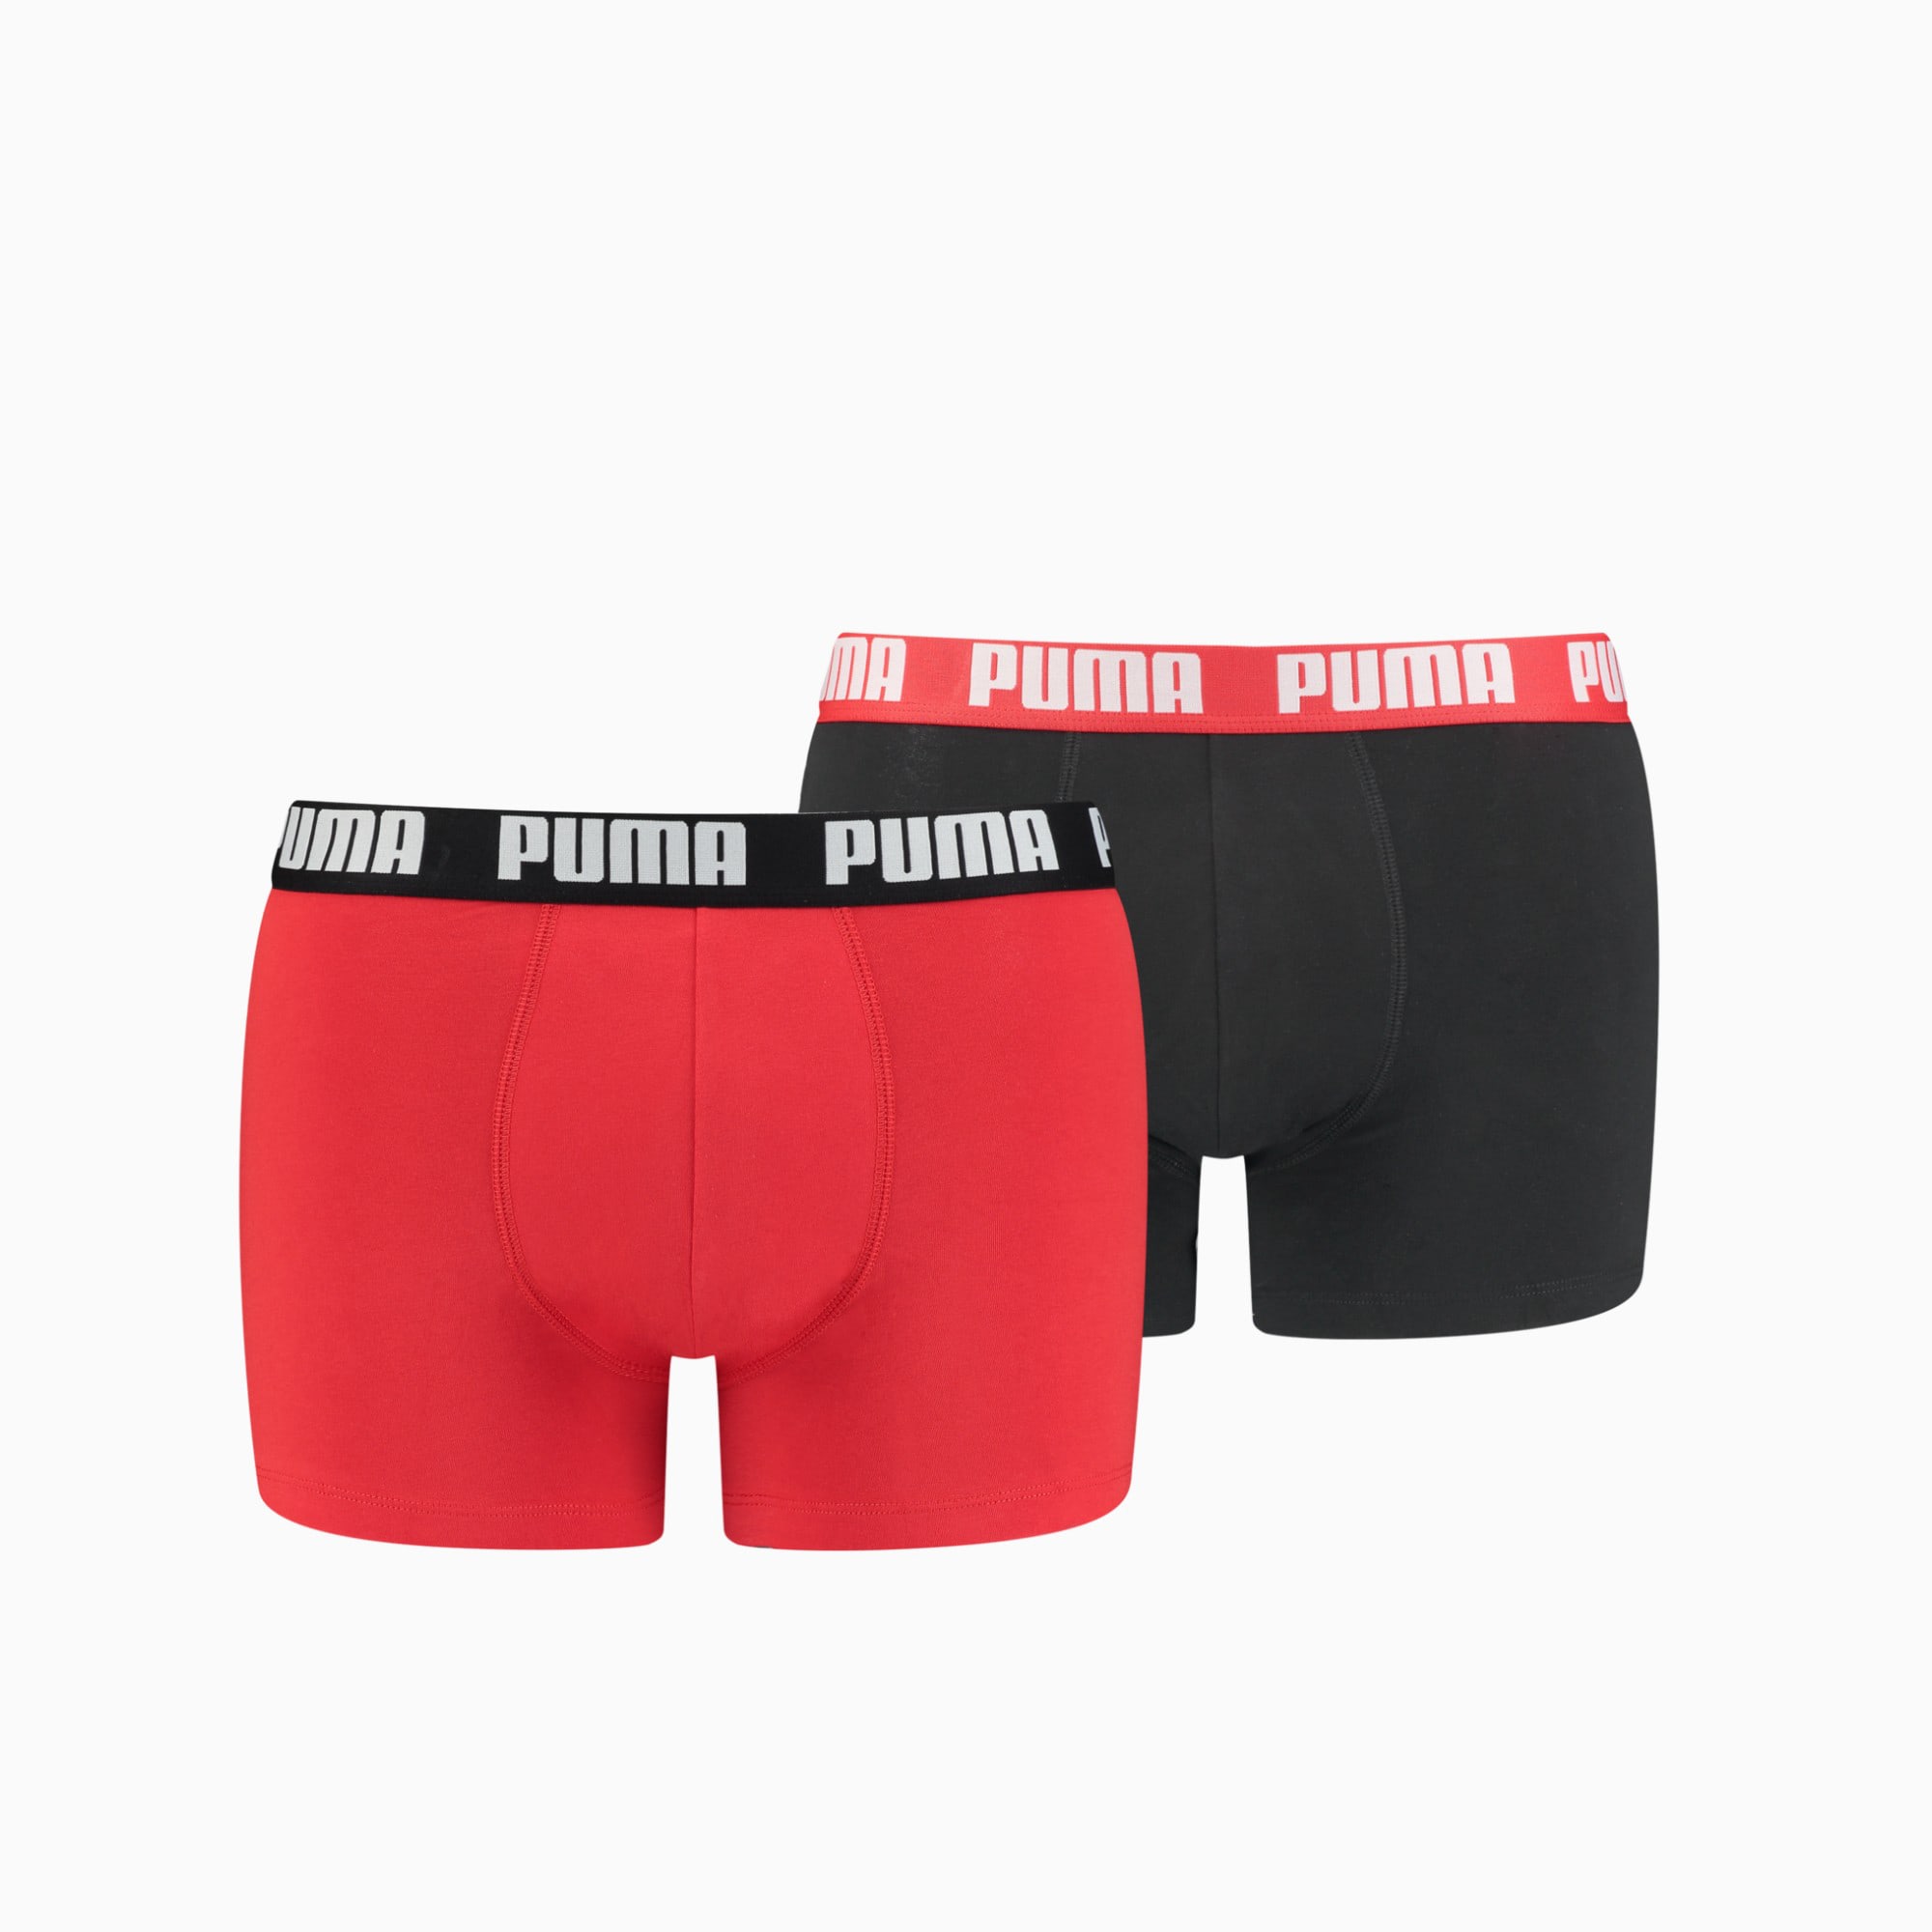 PUMA Basic Boxershorts Herren 2er-Pack, Rot/Schwarz, Größe: XXL, Kleidung